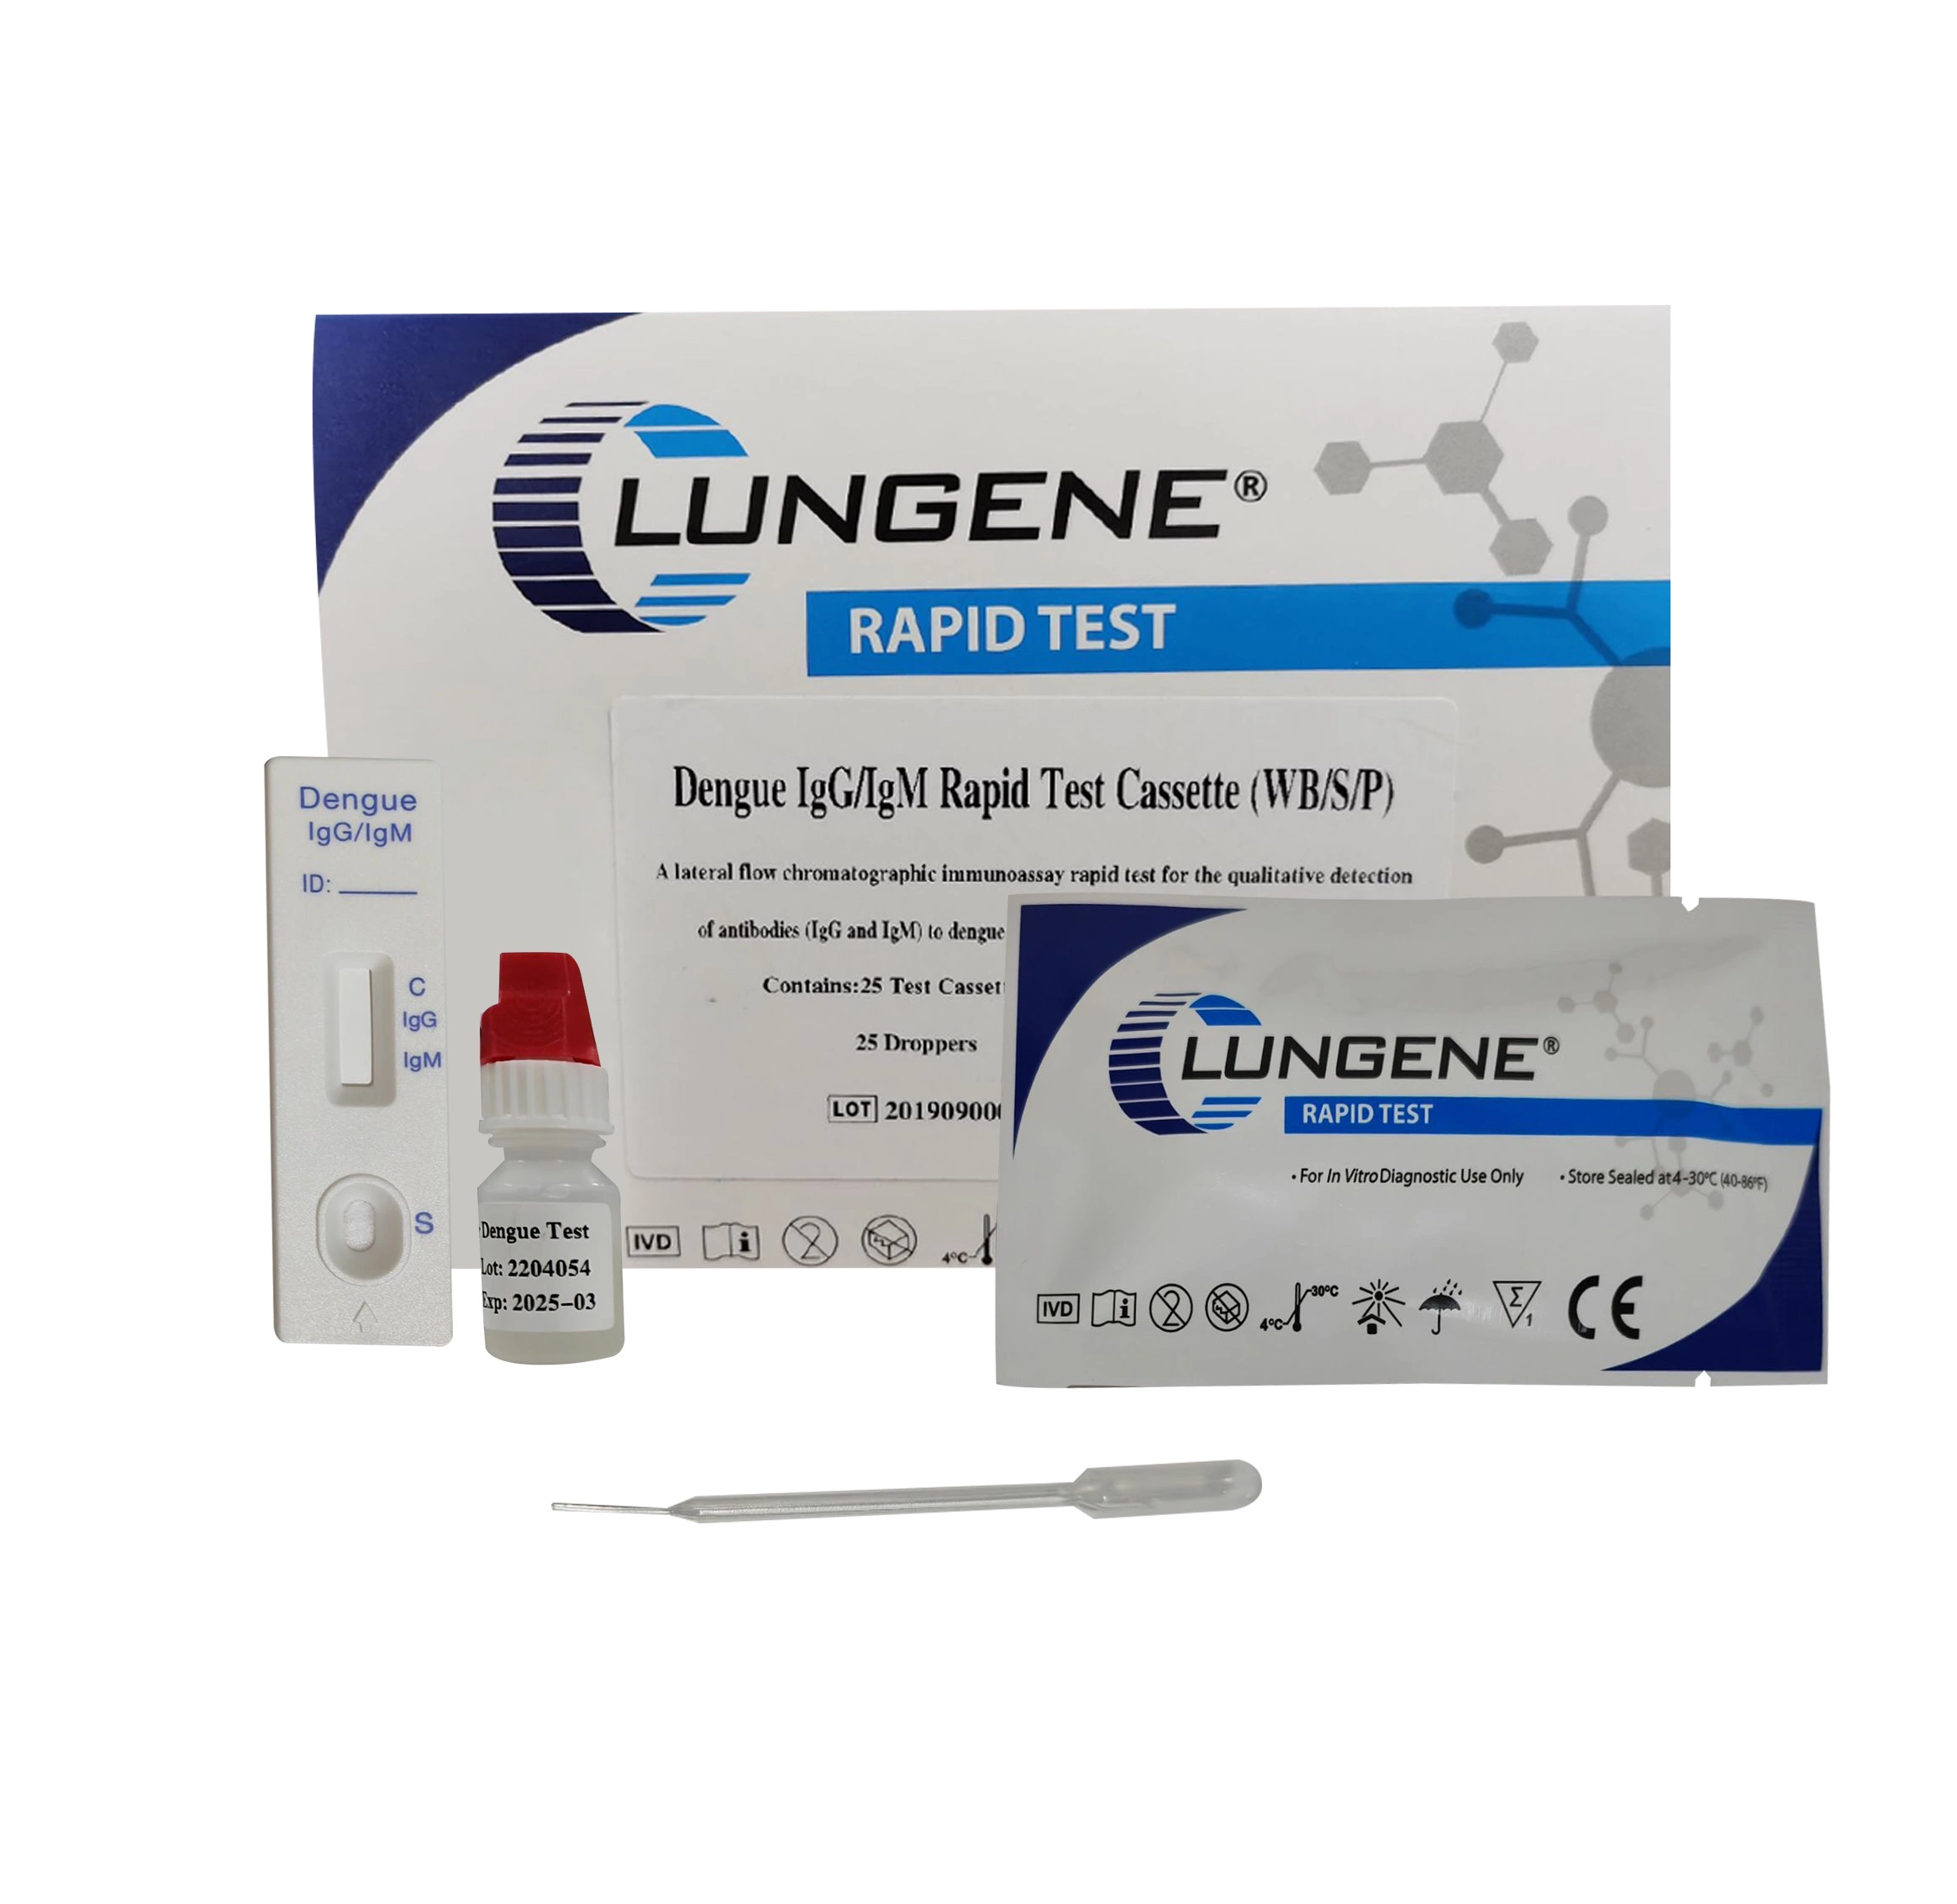 Kit de teste de diagnóstico Dengue IgG/IgM Rapid Test com aprovação CE e ISO do fabricante